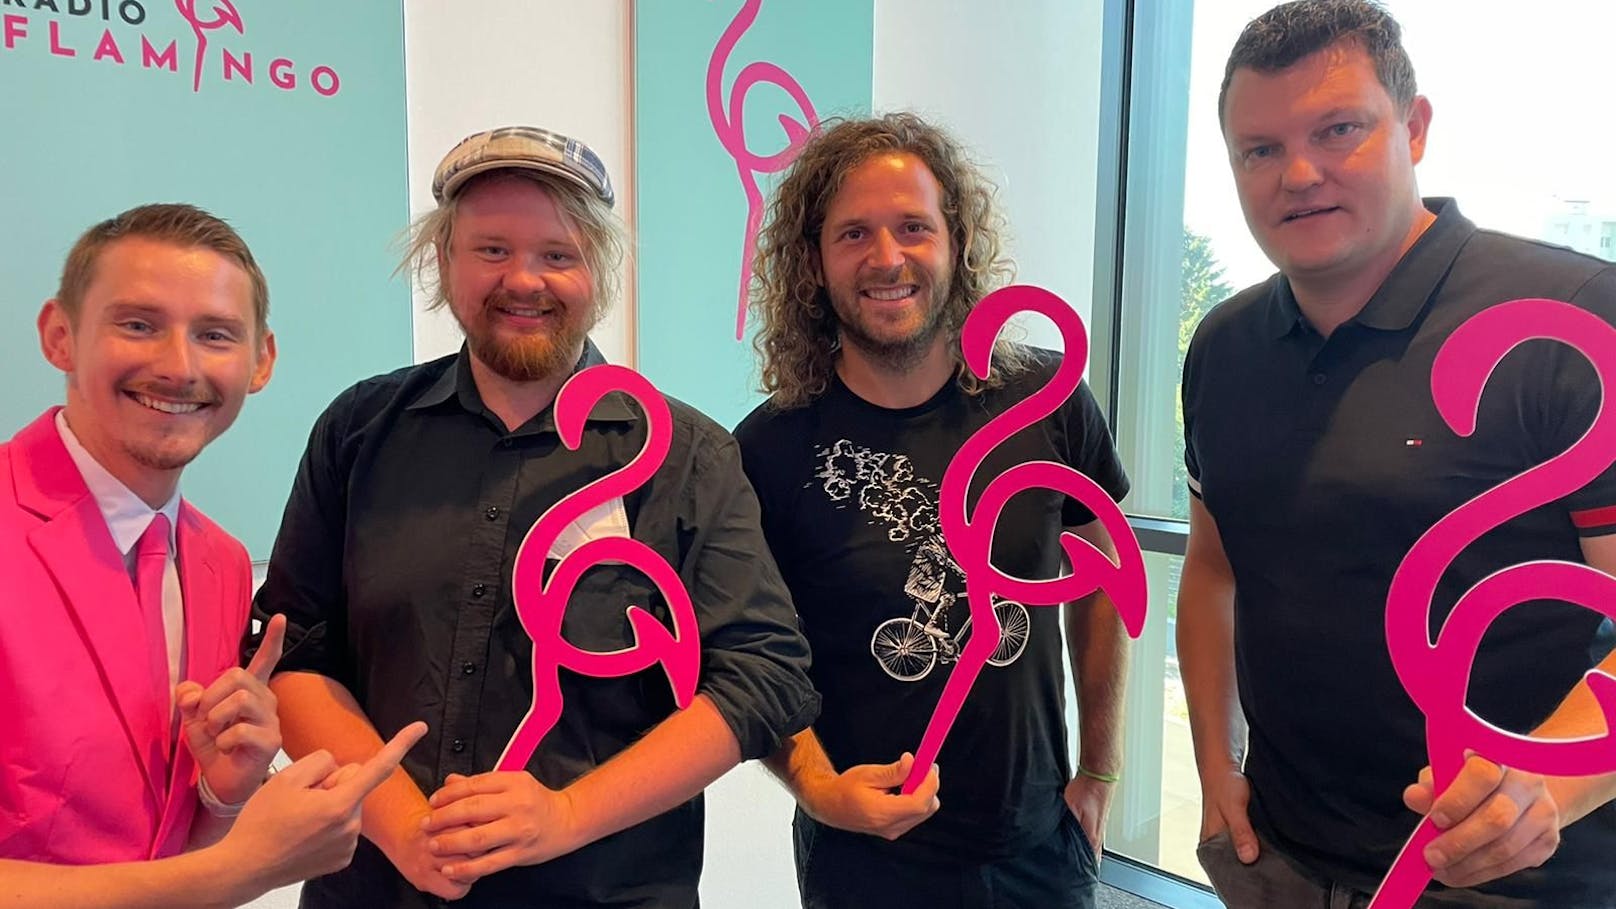 Die "<strong>Draufgänger</strong>" waren beim Senderstart von <strong>Radio Flamingo</strong> live dabei